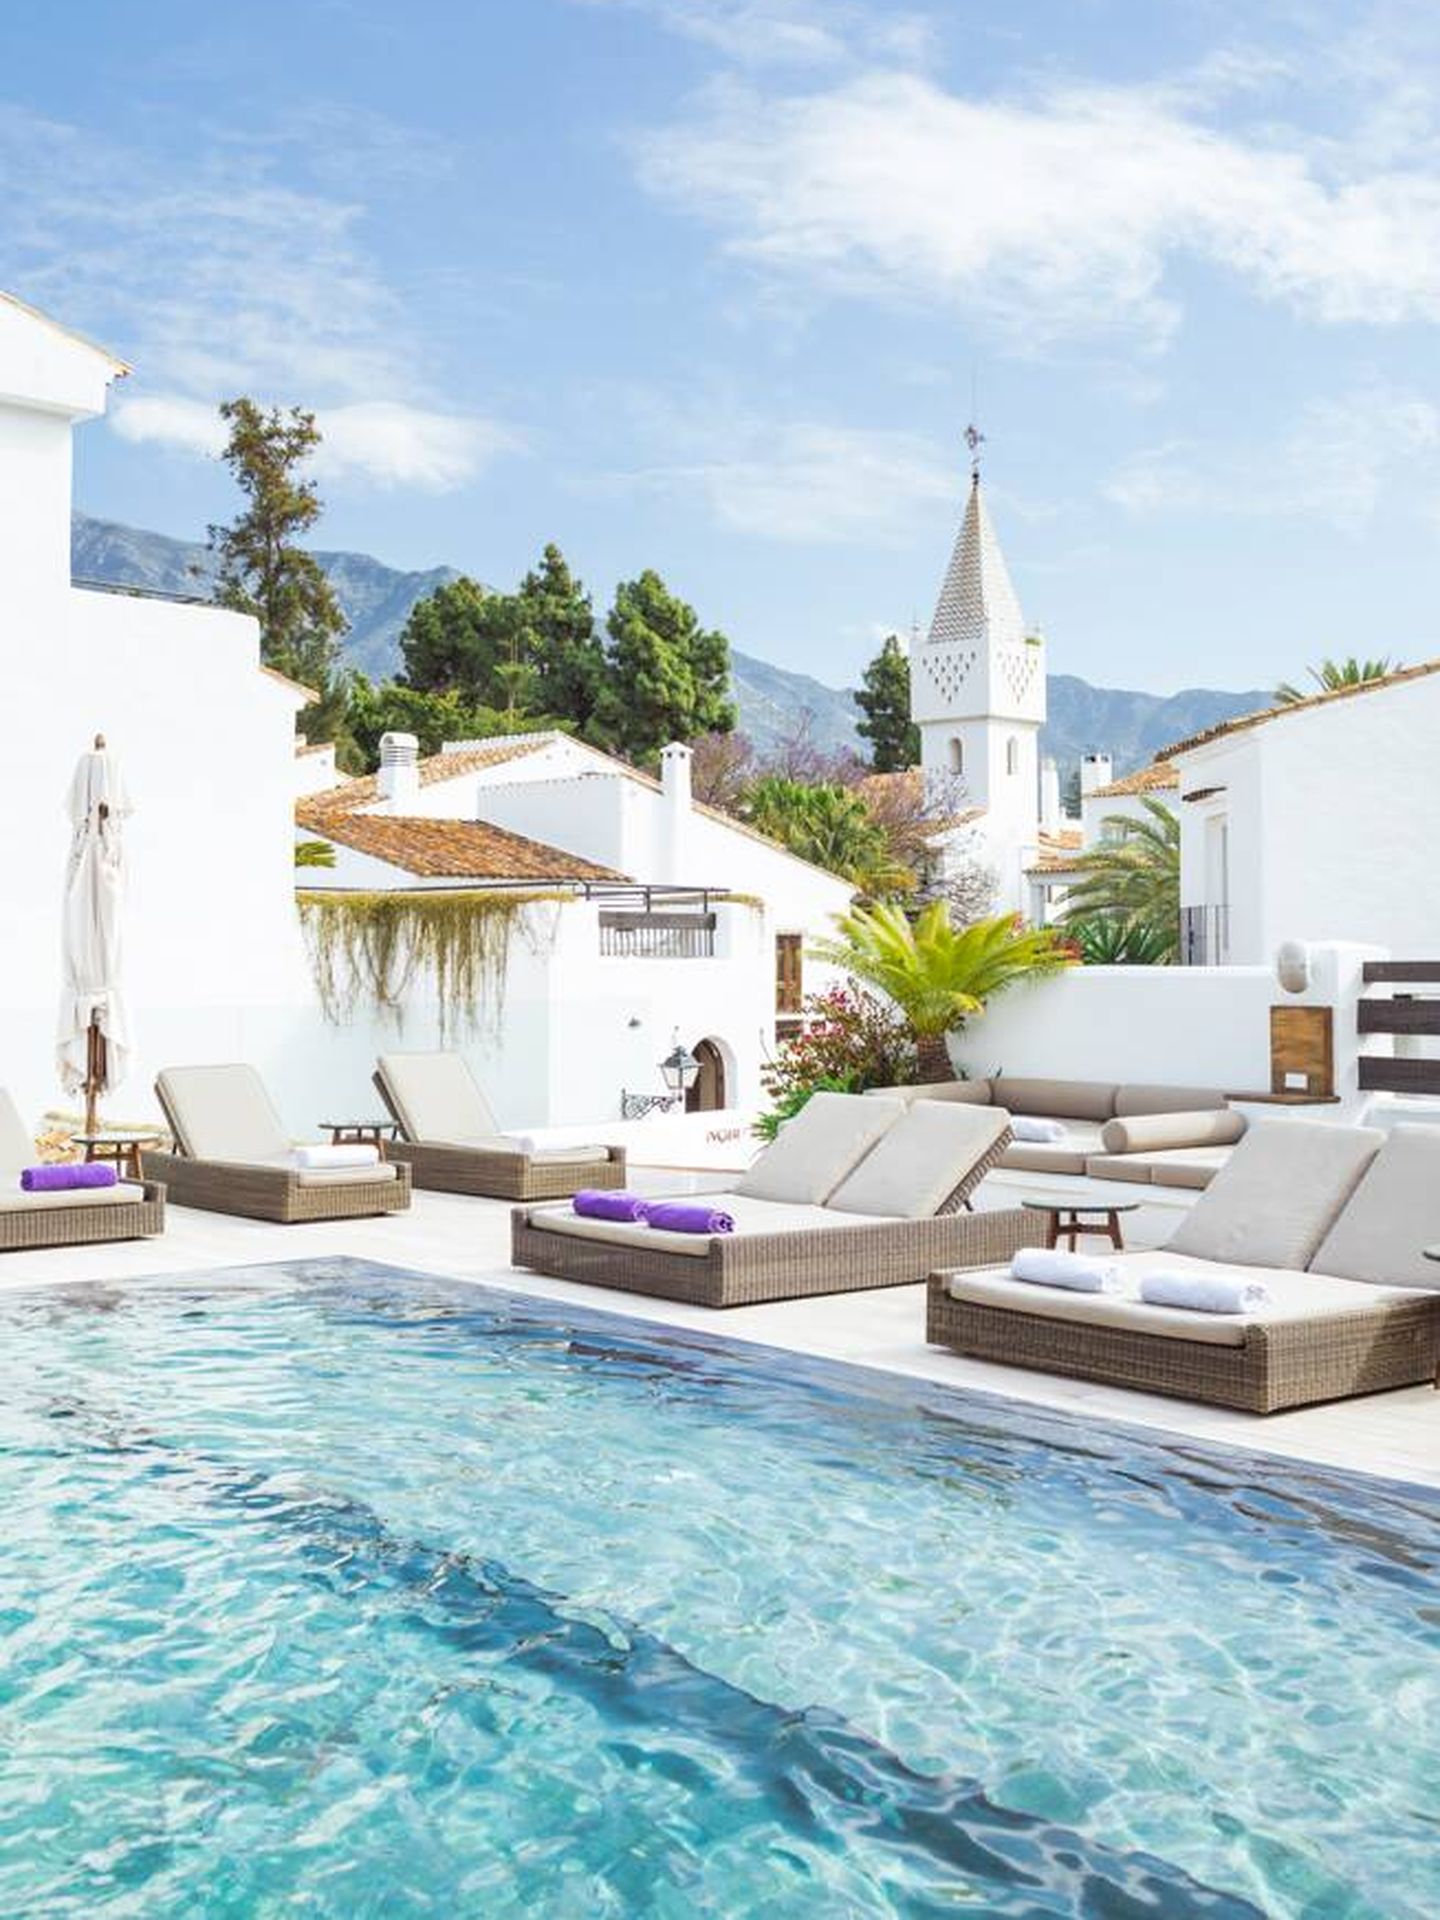 La espectacular piscina de Nobu Marbella. (Cortesía)